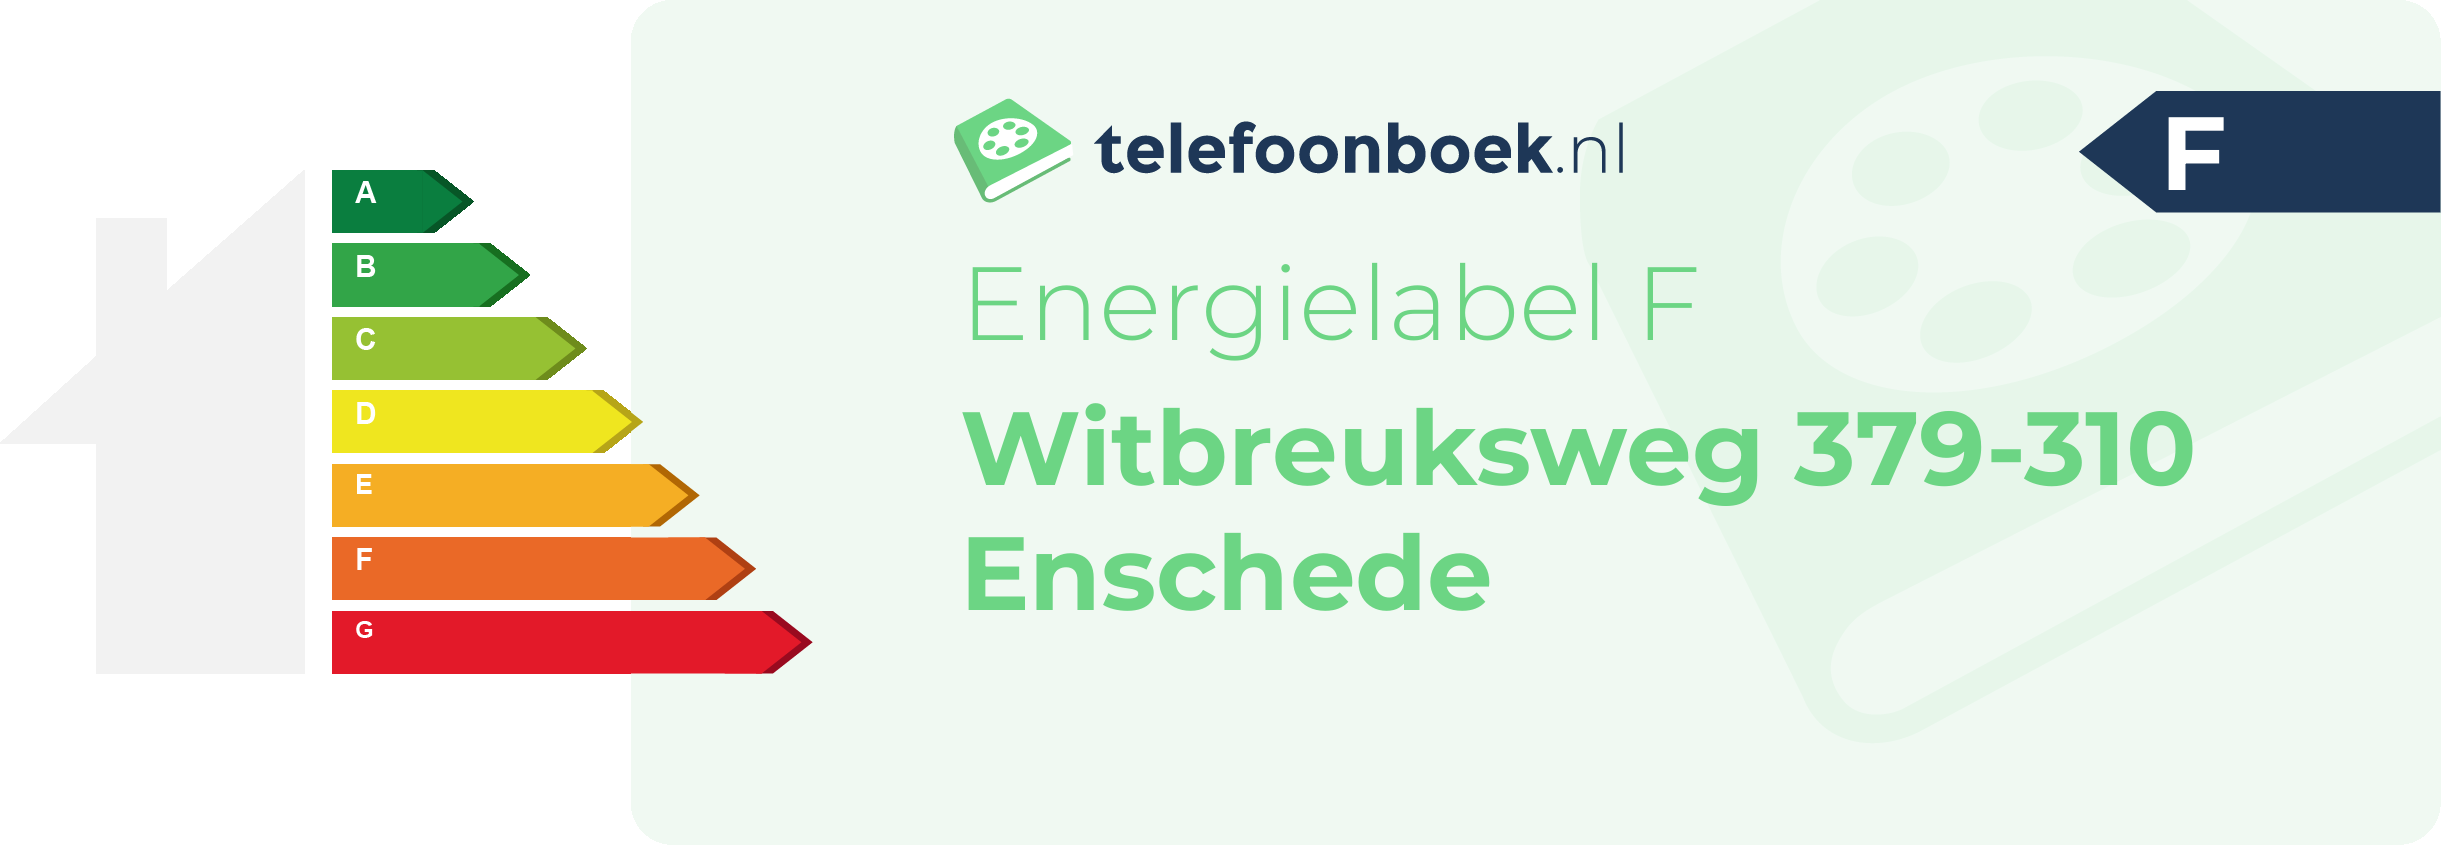 Energielabel Witbreuksweg 379-310 Enschede